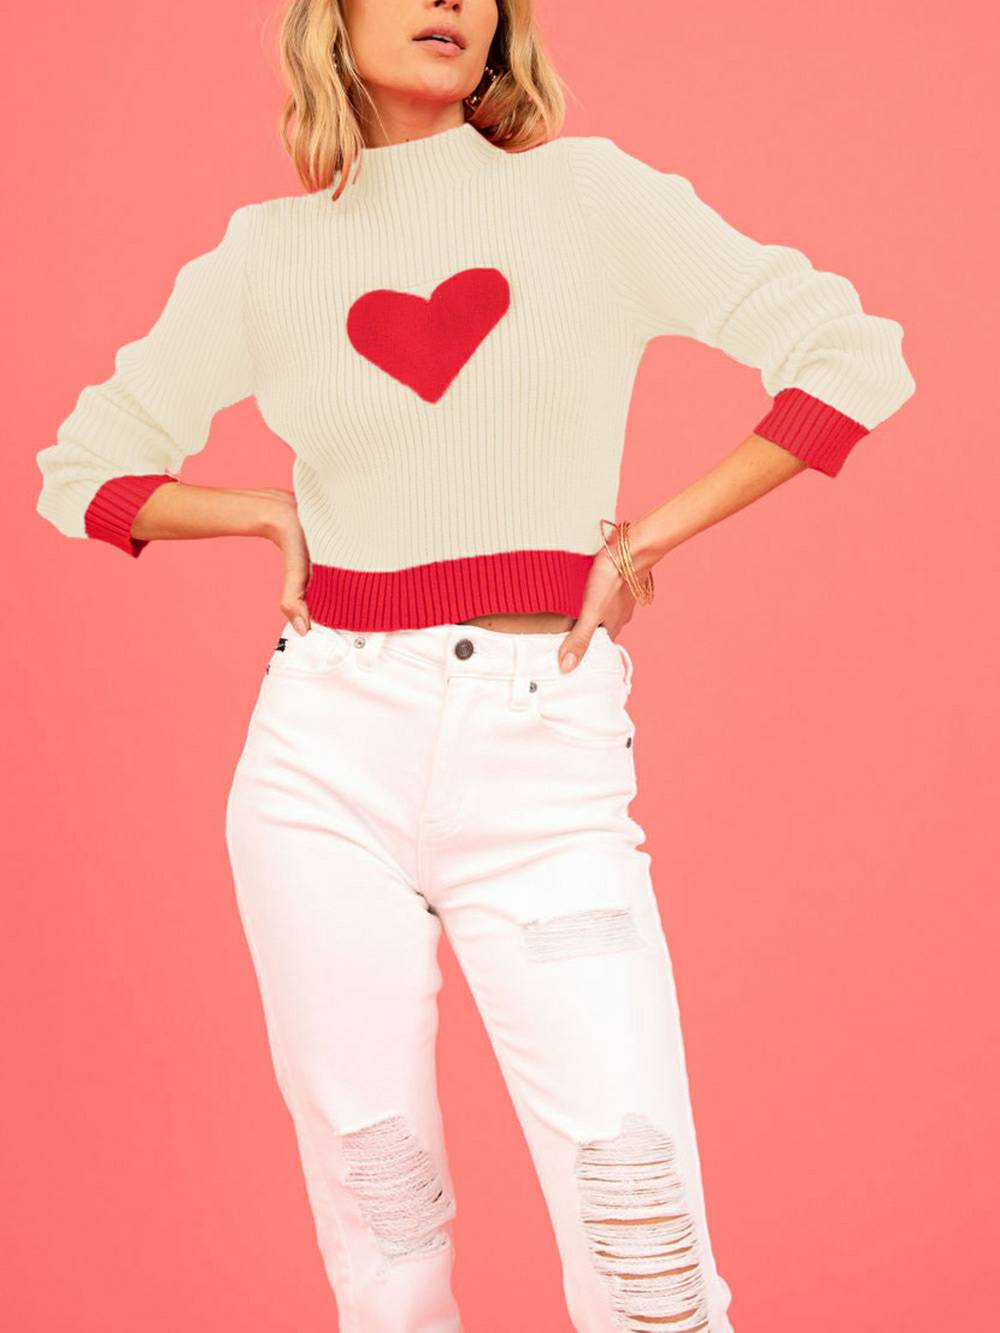 Suéter de malha com gola alta com padrão de coração para o Dia dos Namorados